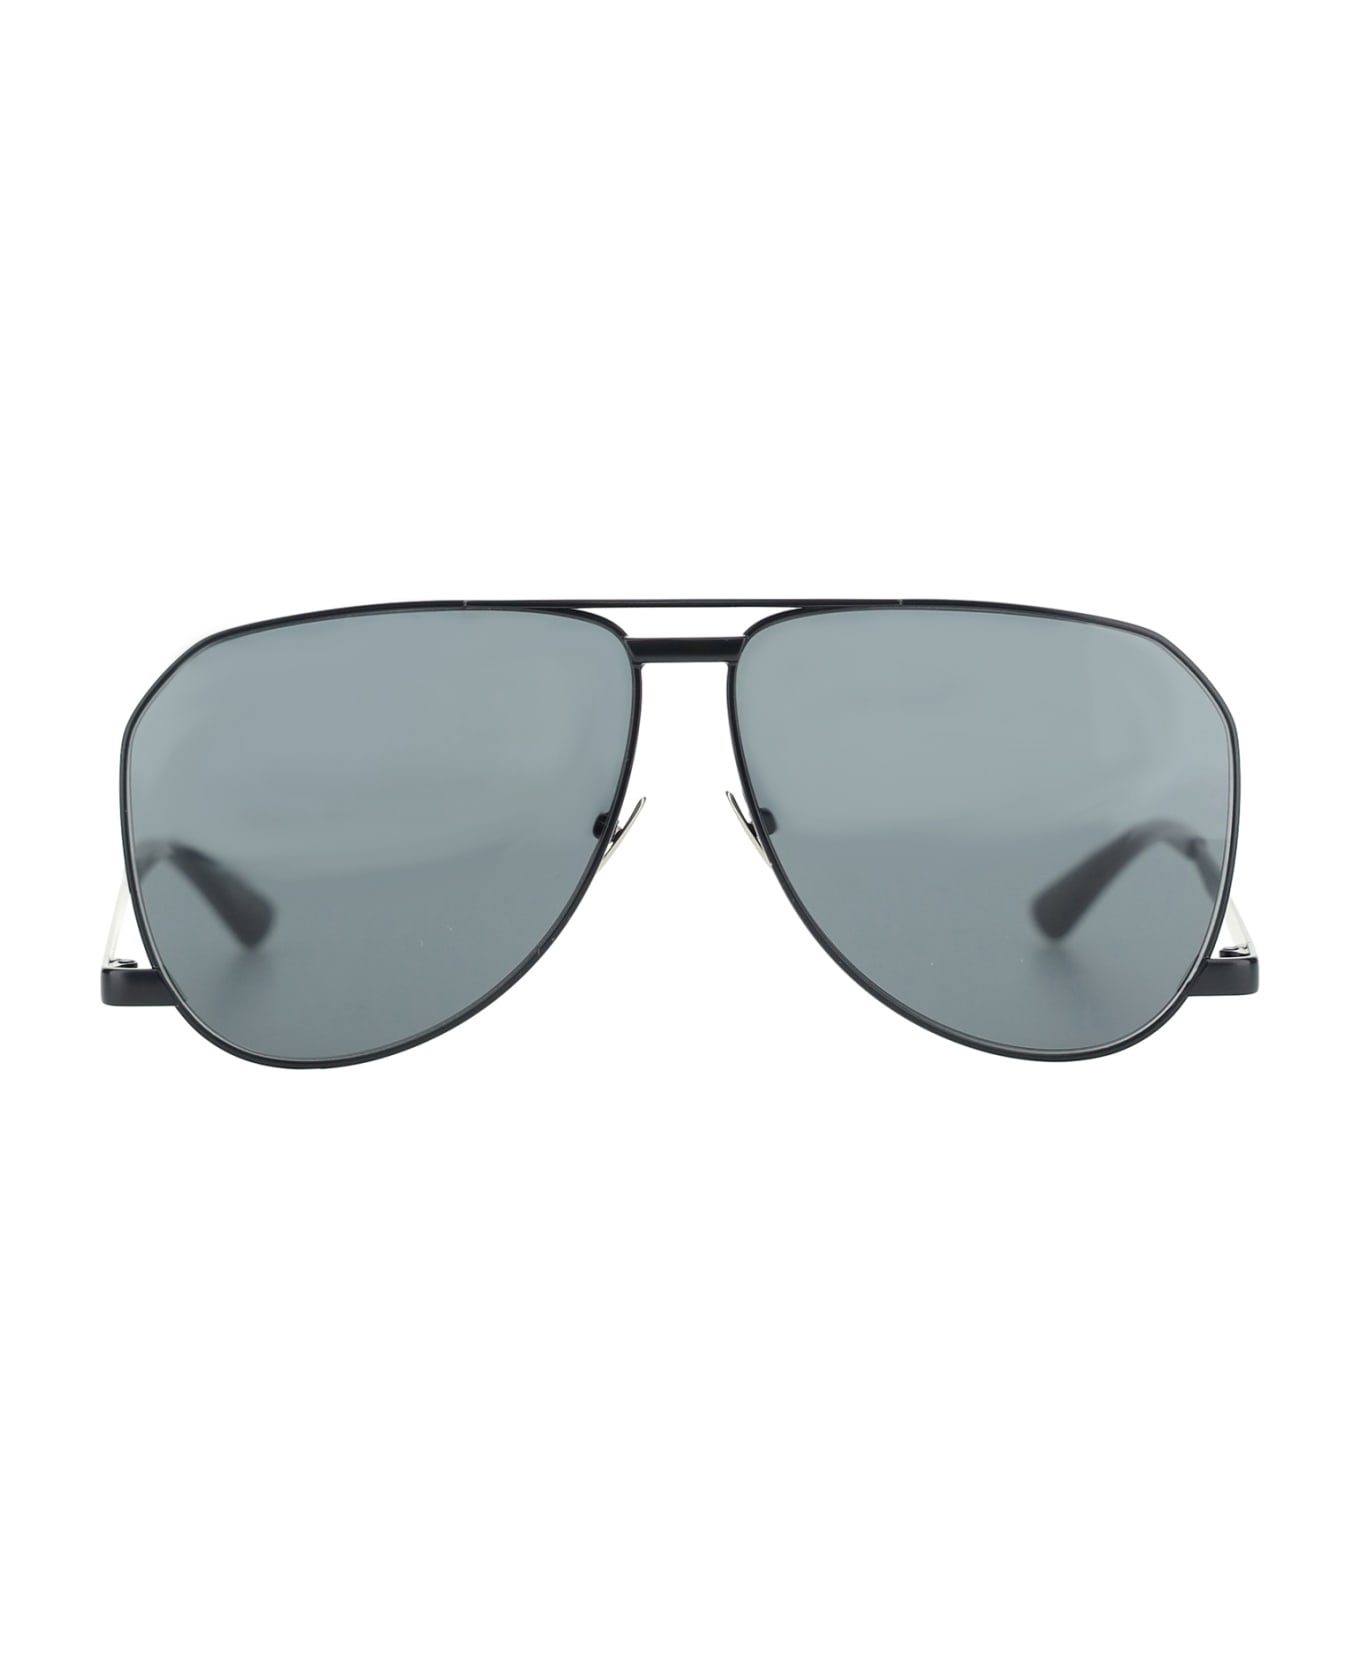 Saint Laurent Eyewear Sunglasses - Metal Black サングラス